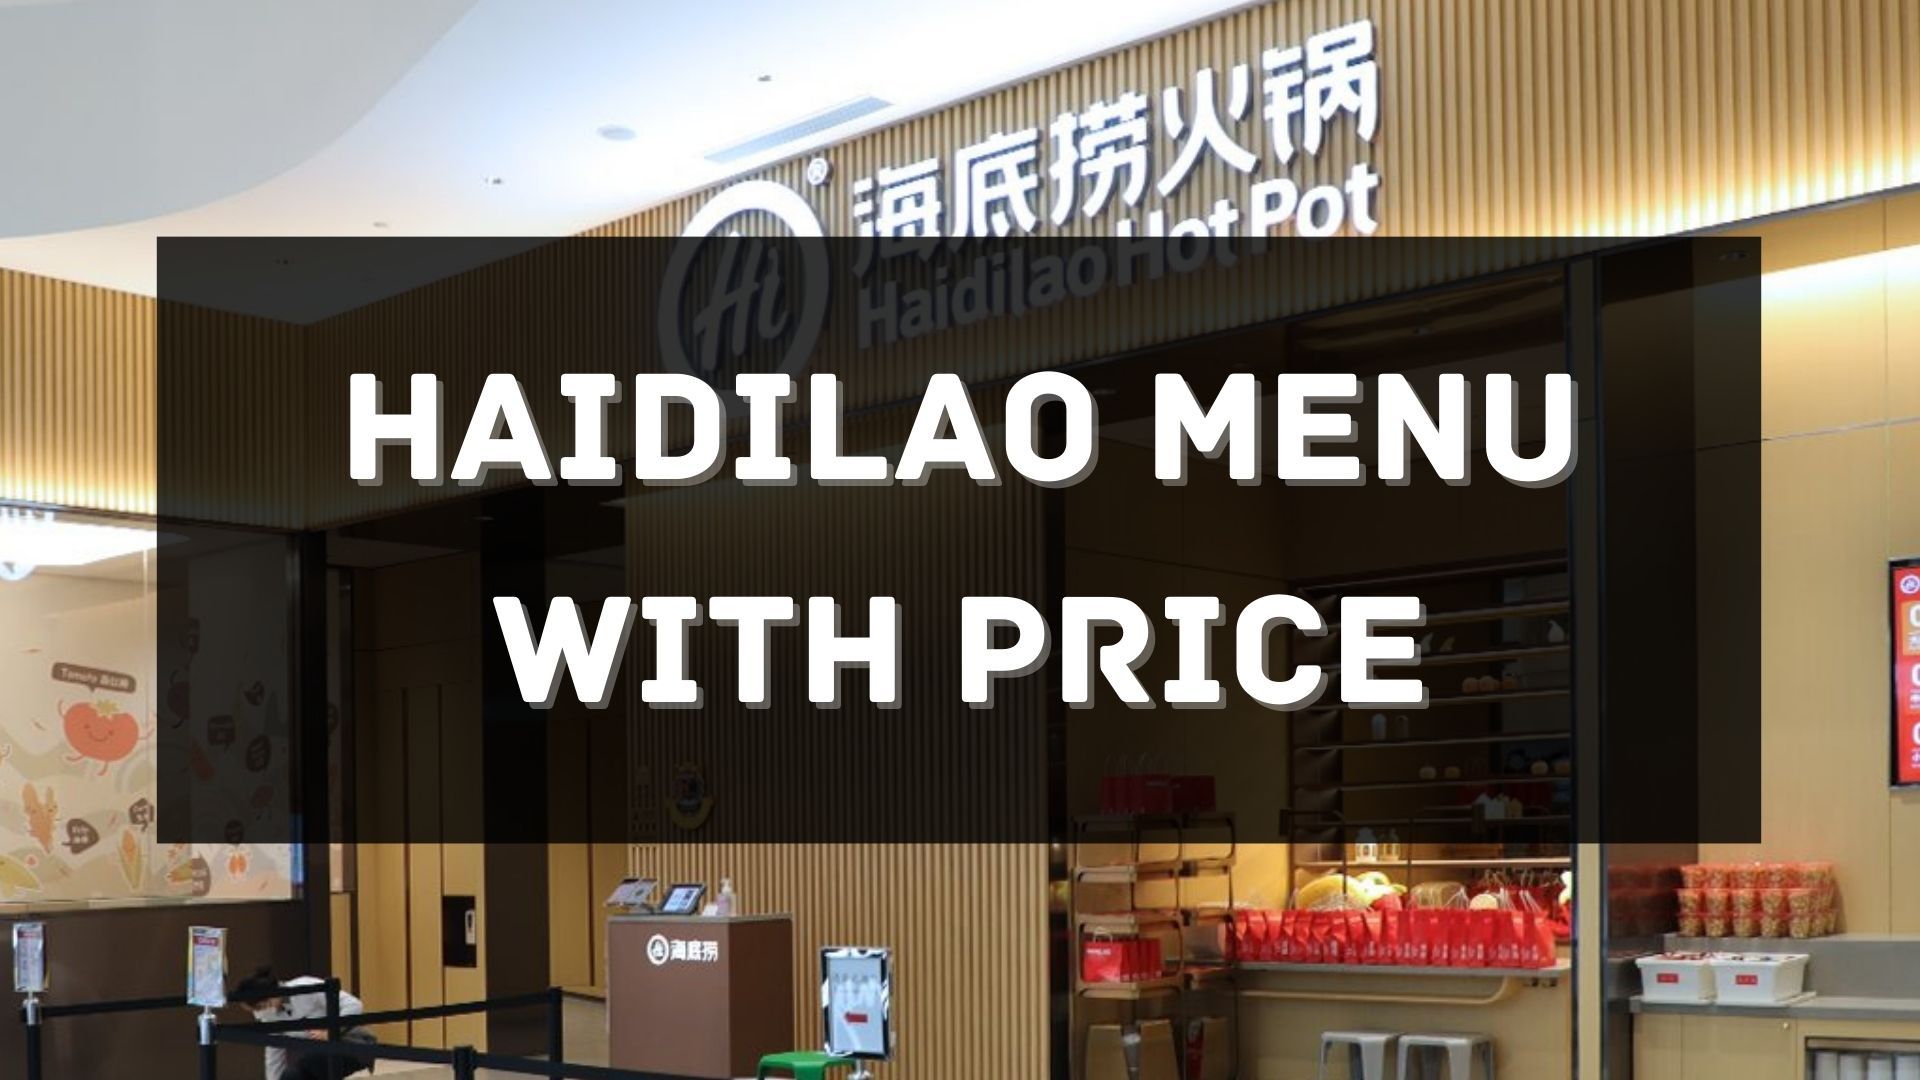 haidilao menu with price singapore